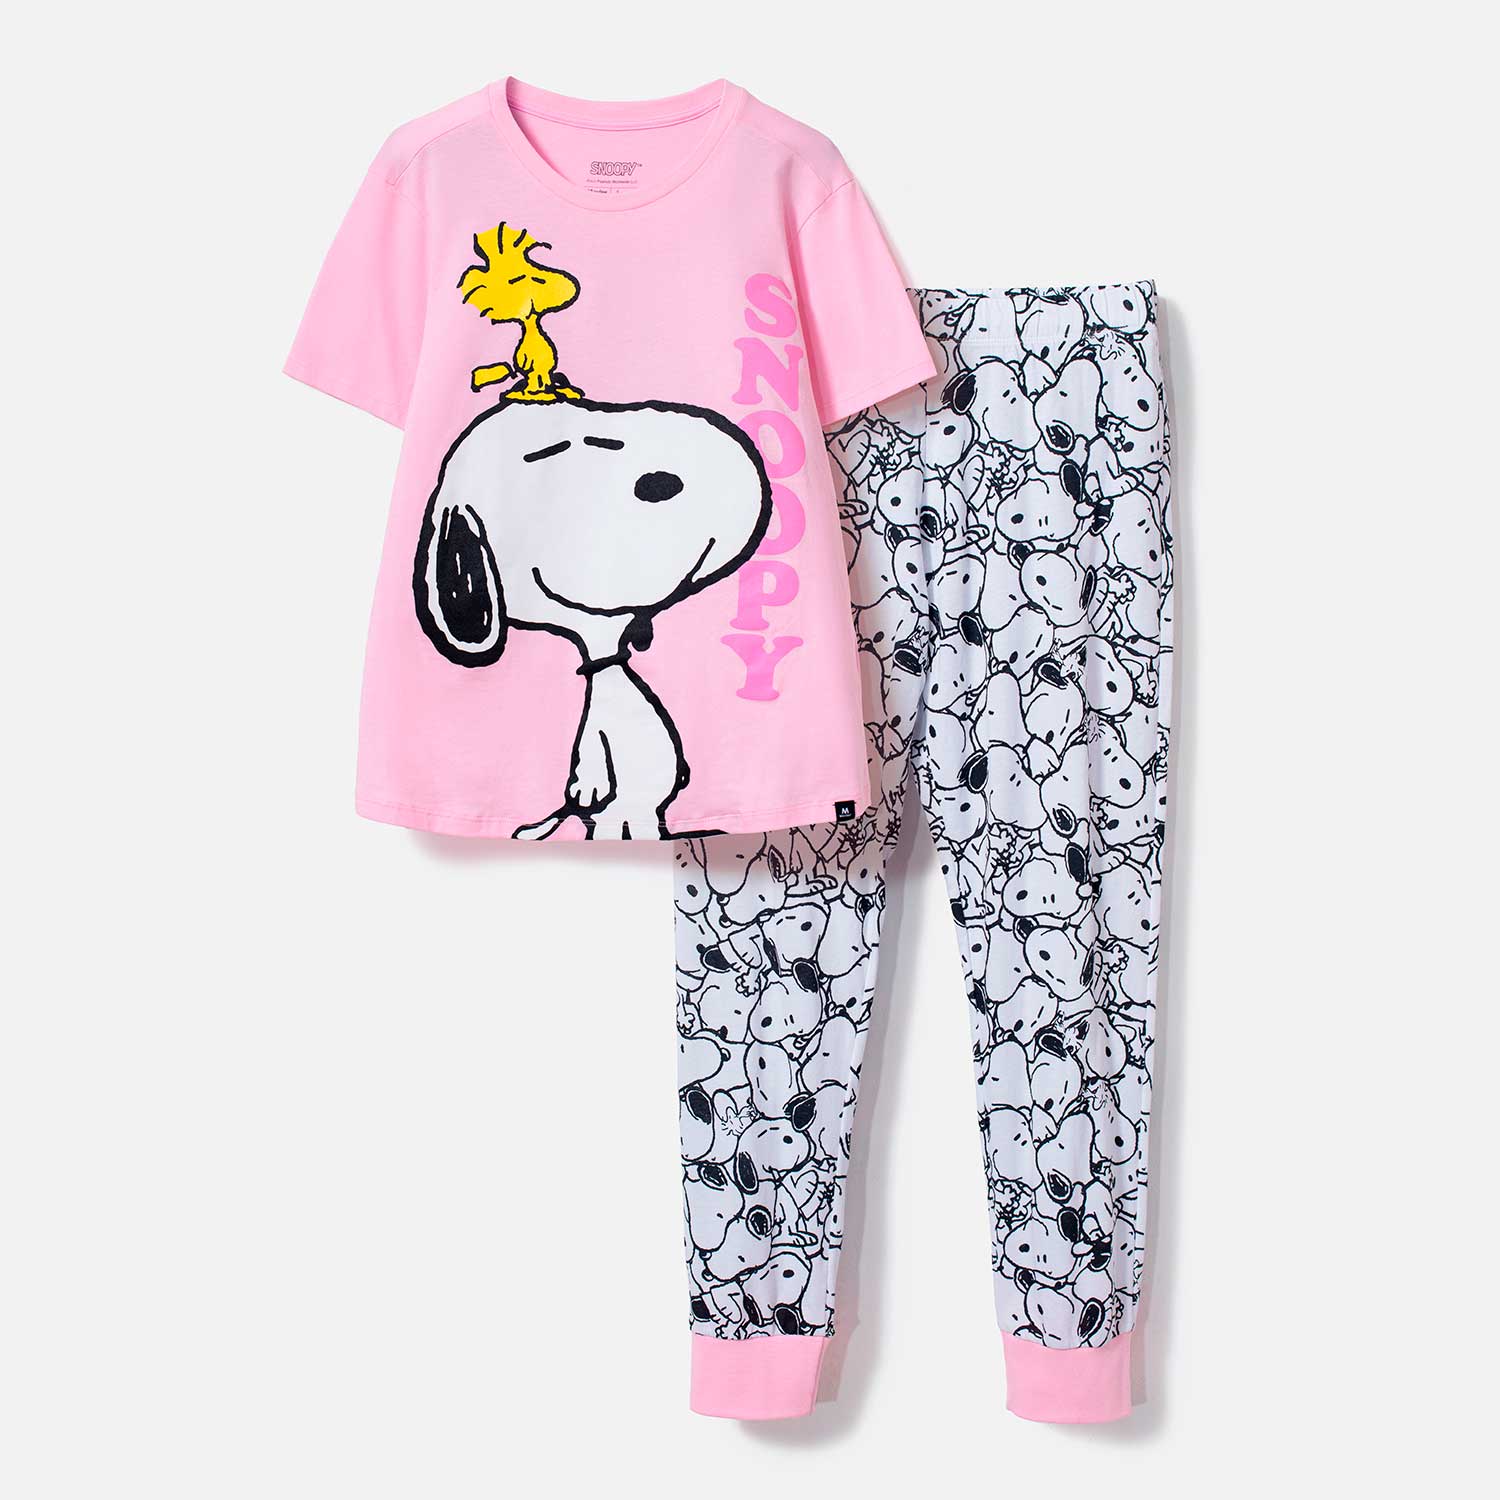 Pijama de Snoopy con pantalón largo rosada para mujer M-0